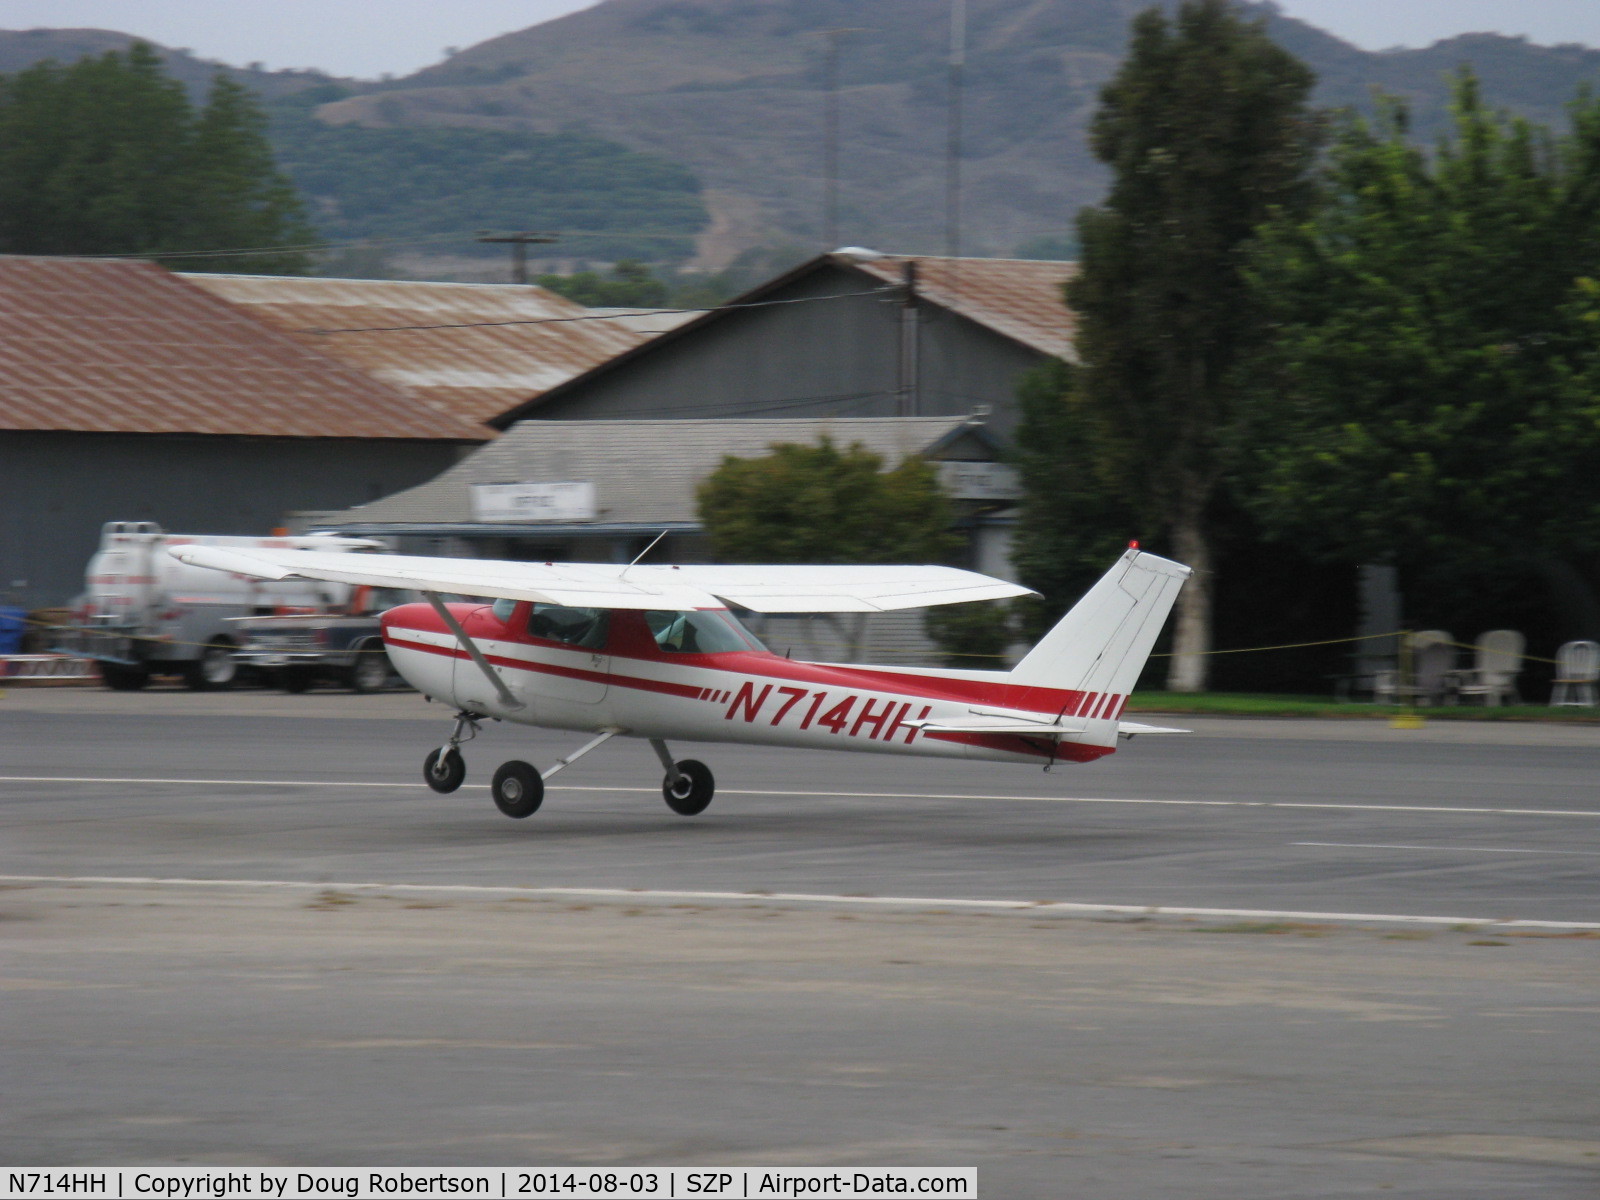 N714HH, 1977 Cessna 150M C/N 15079185, 1977 Cessna 150M, Continental O-200 100 Hp, near touchdown